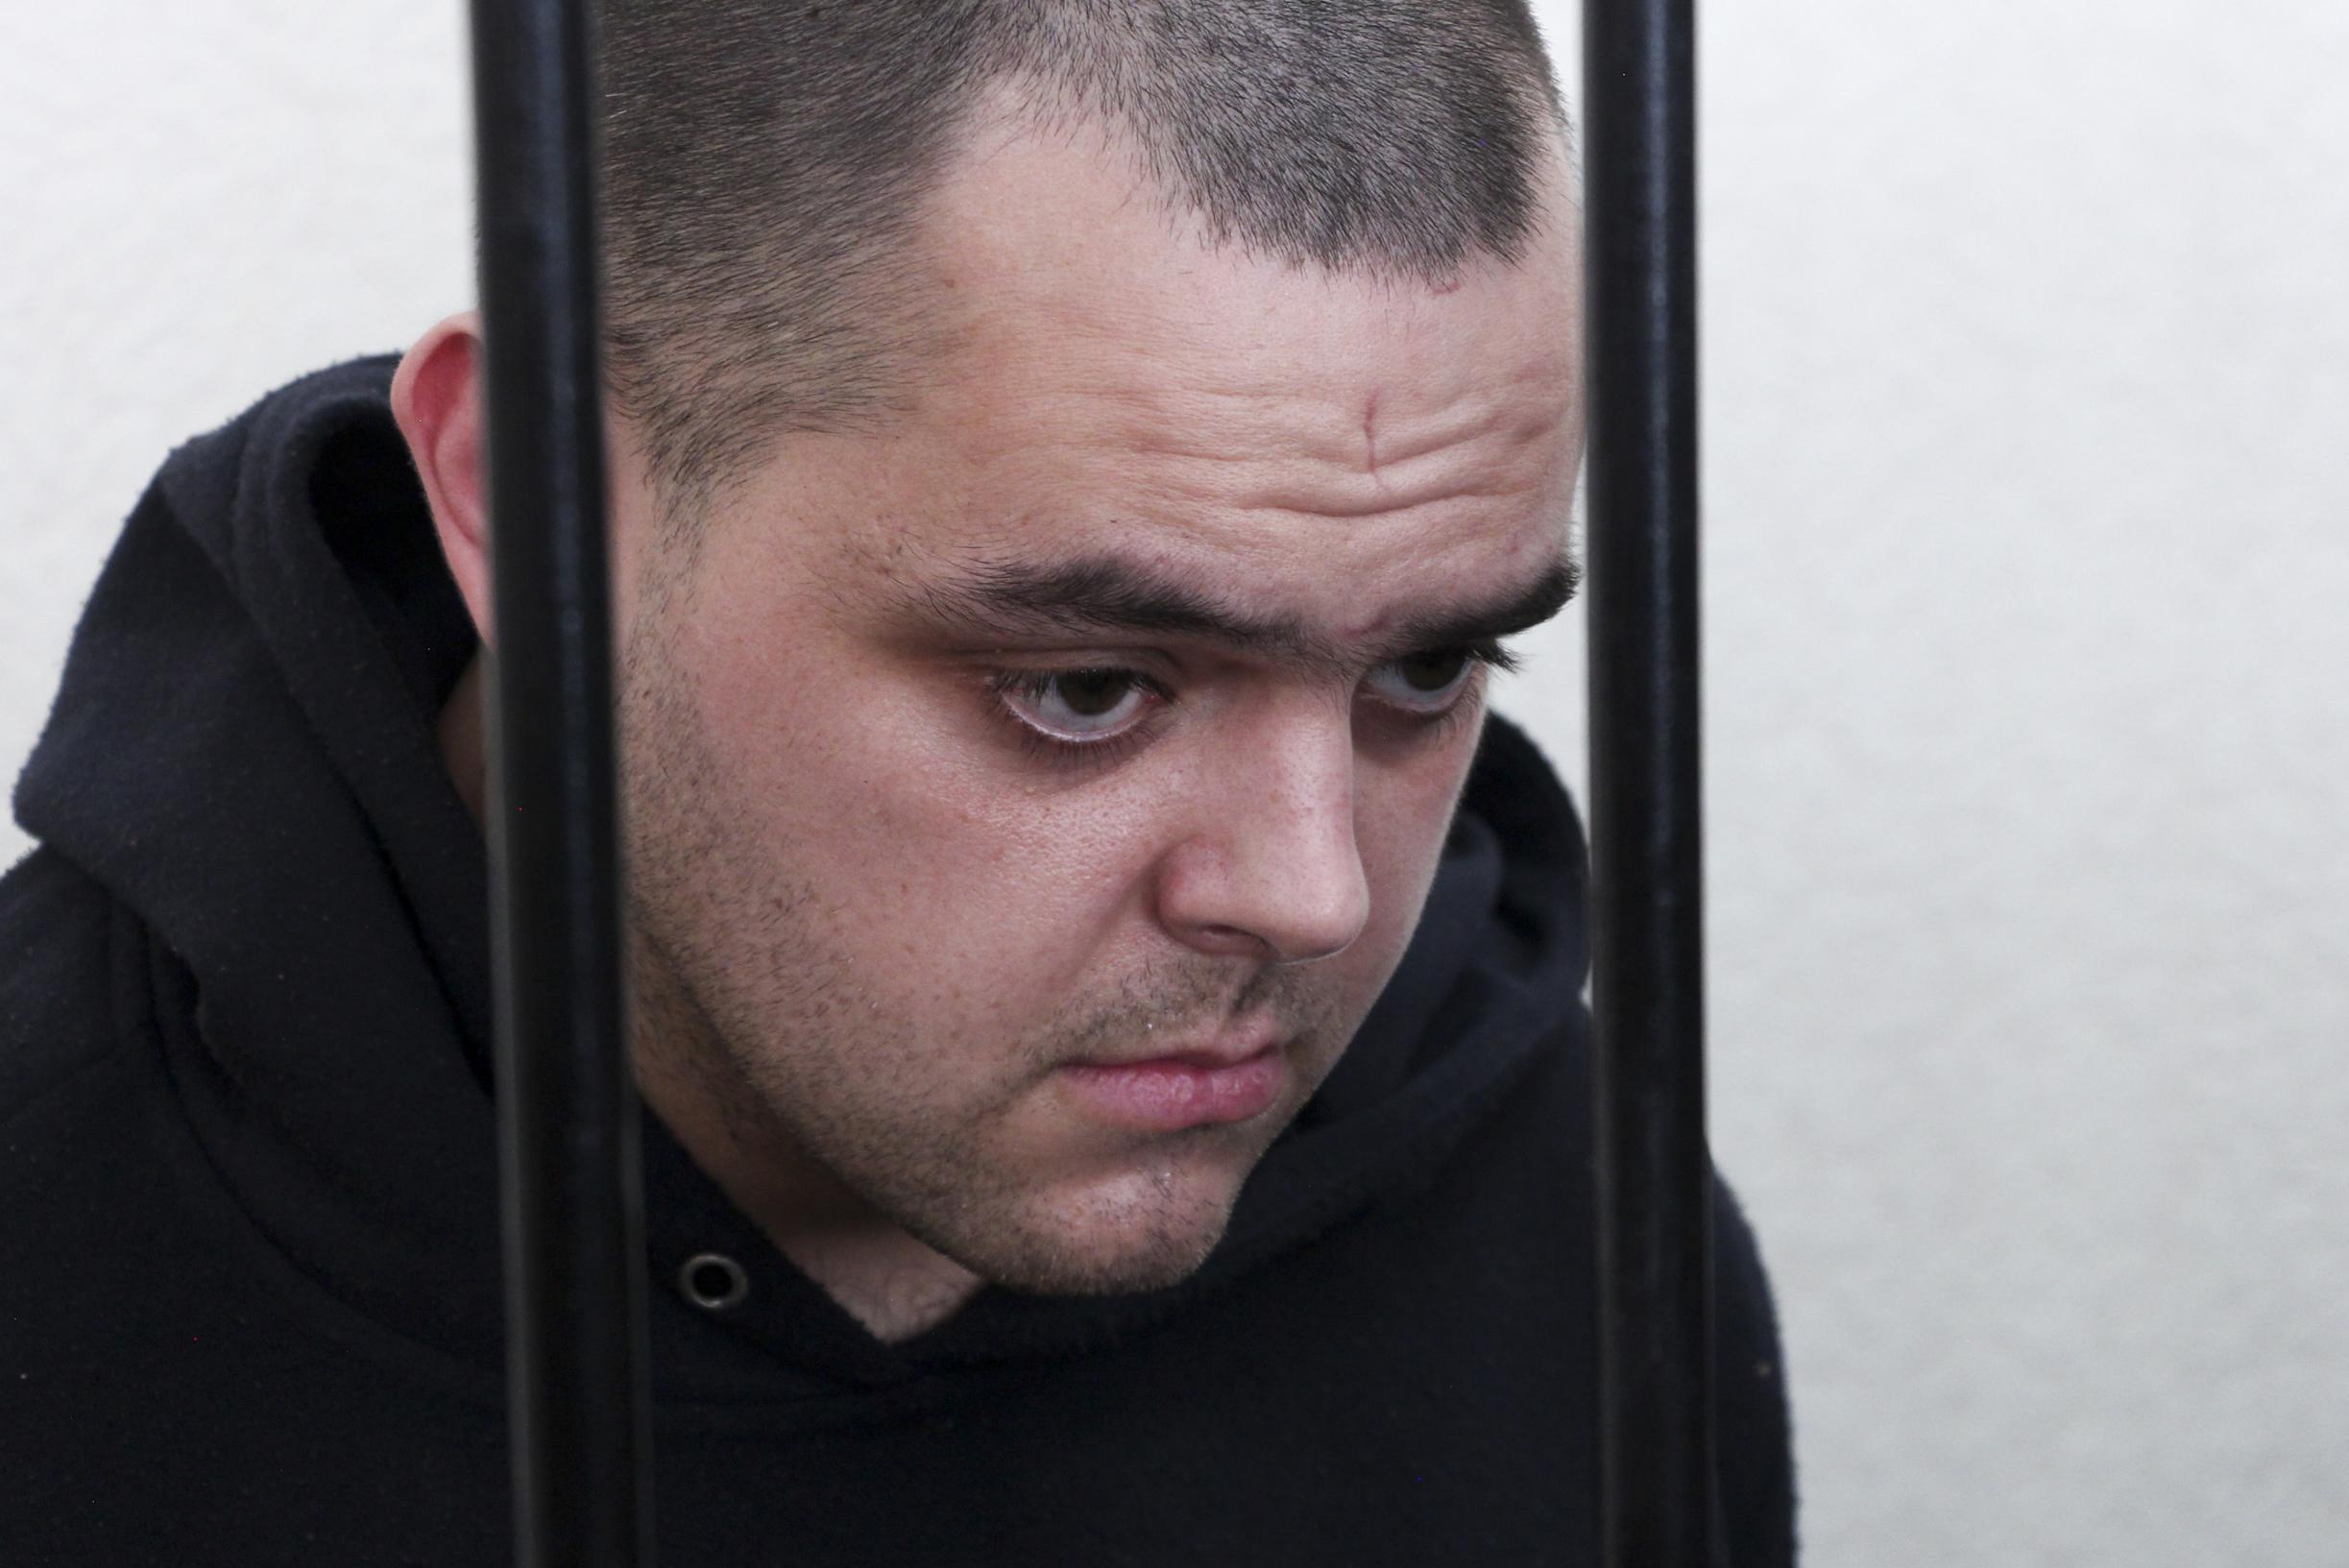 Освобожденный военнопленный свидетельствует о месяцах ужаса в России: «Я хотел плакать, но не мог»